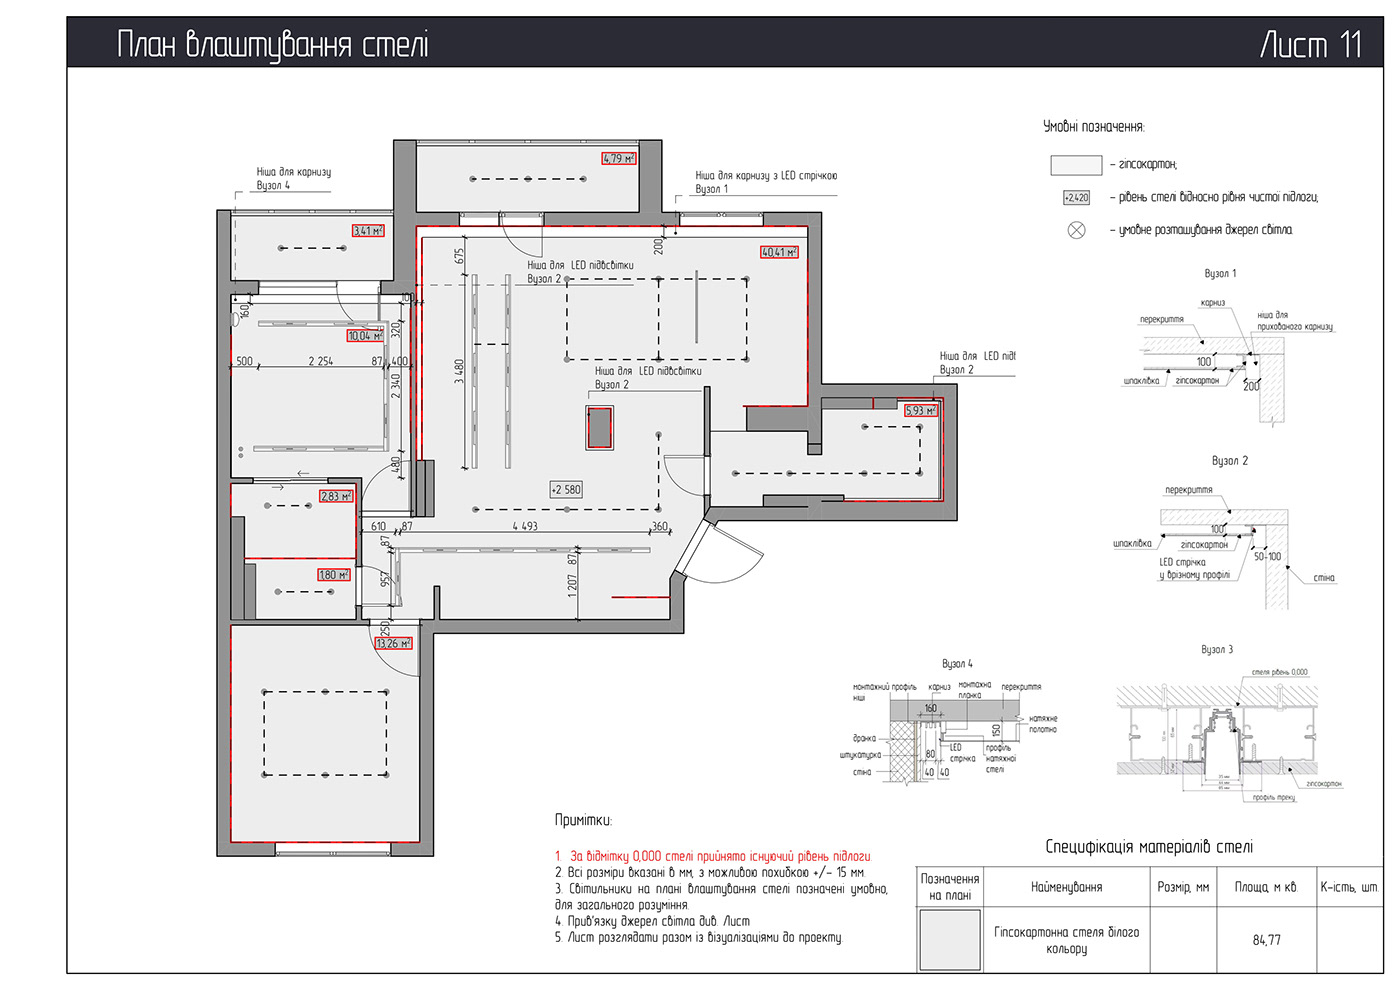 interior design  architecture ArchiCAD 3D revit BIM Draft Drawing  design interiordesign